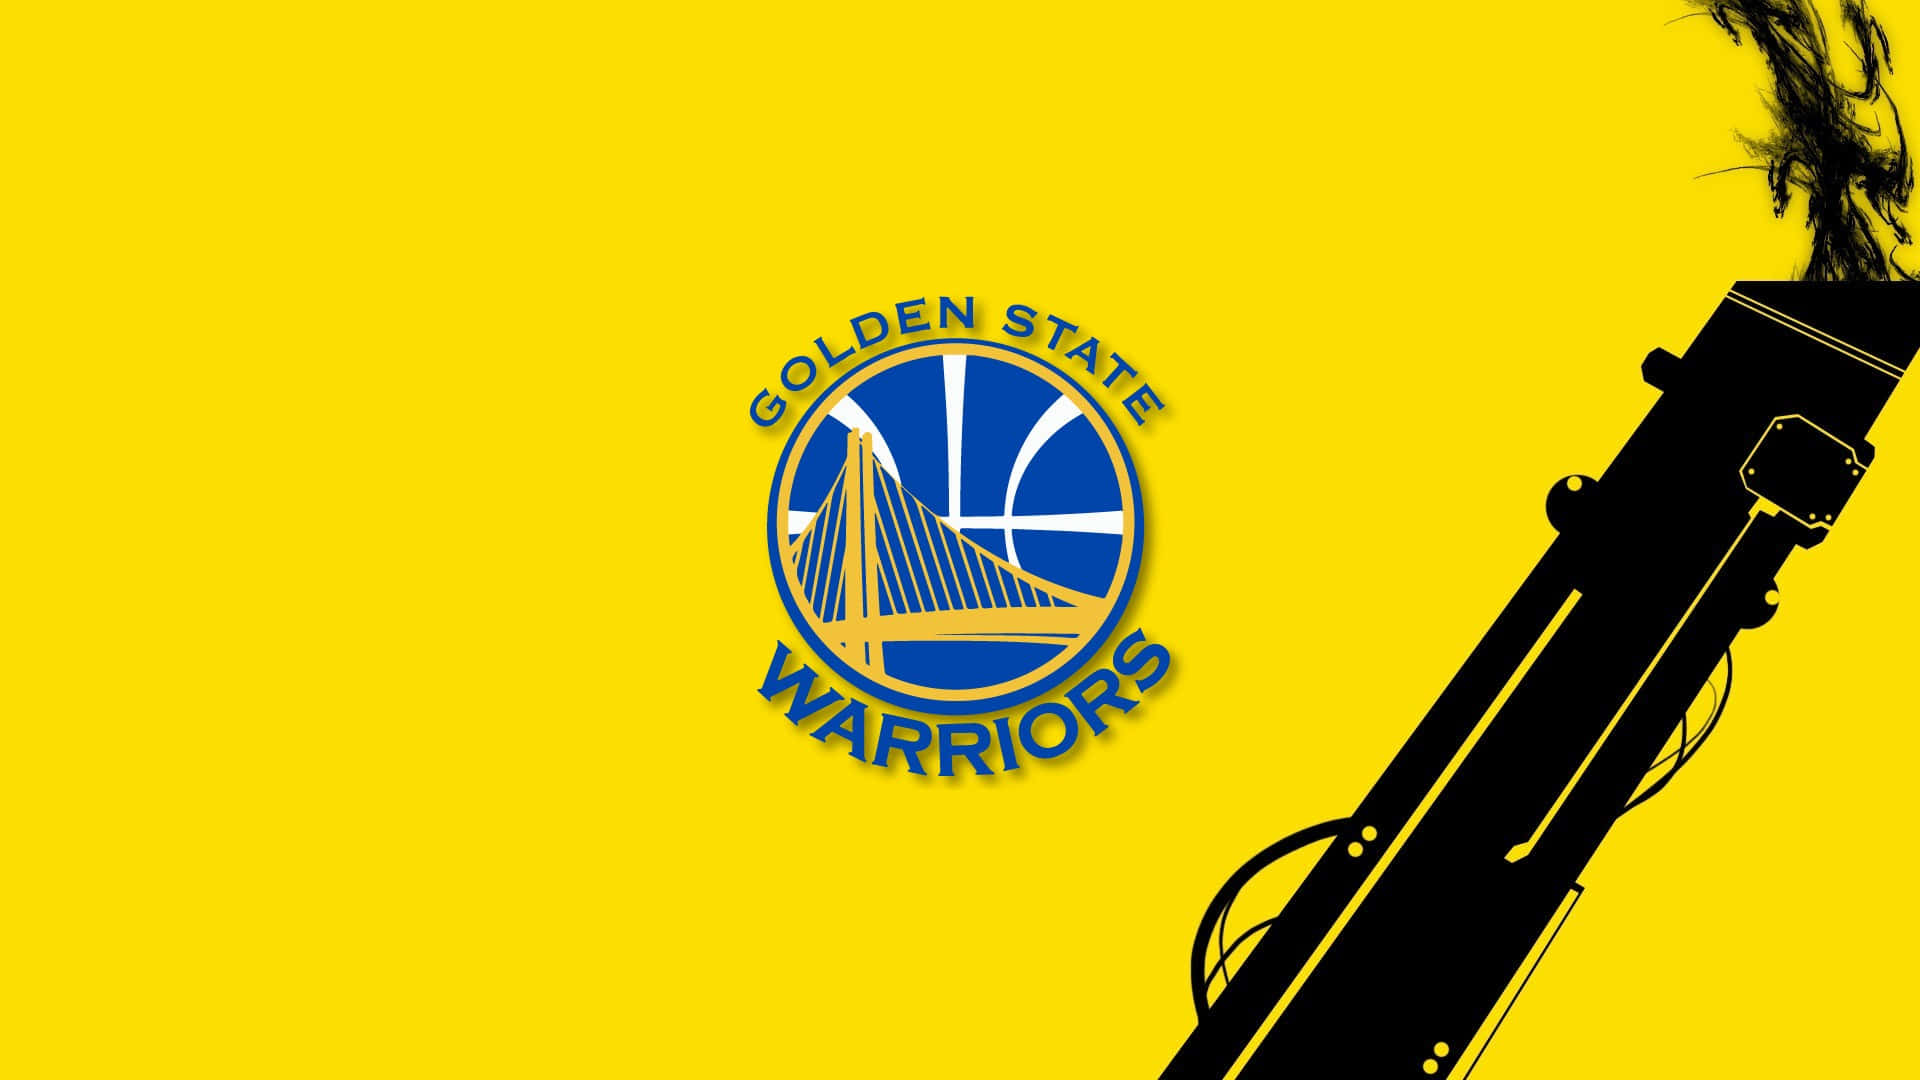 Logoder Golden State Warriors Basketballmannschaft Wallpaper